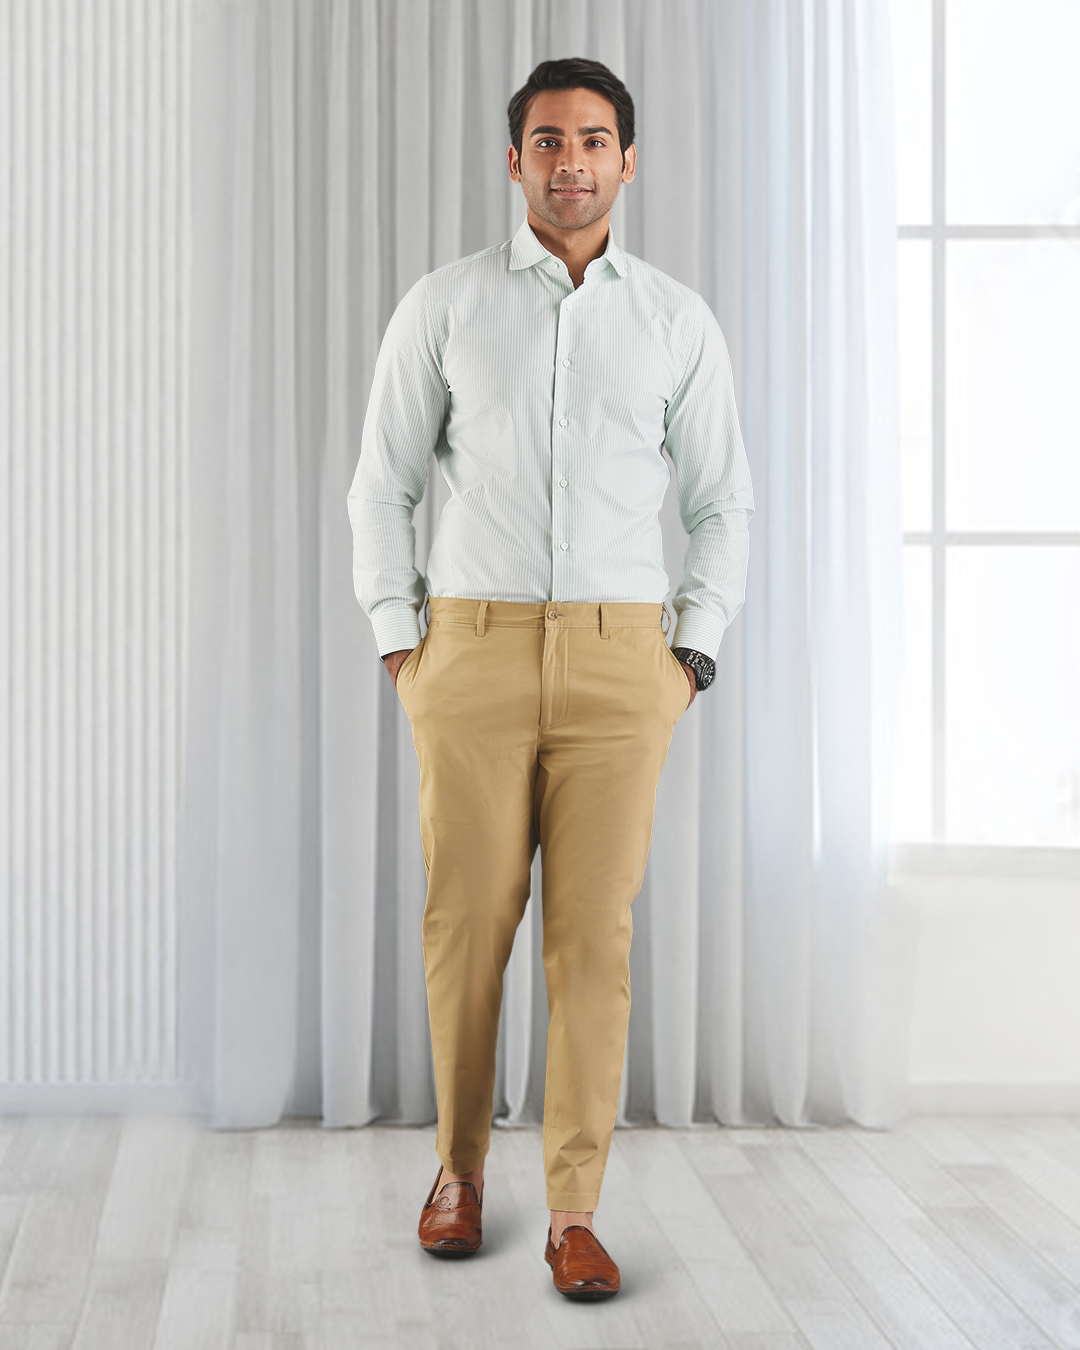 Model wearing custom Genoa Chino pants for men by Luxire in khaki